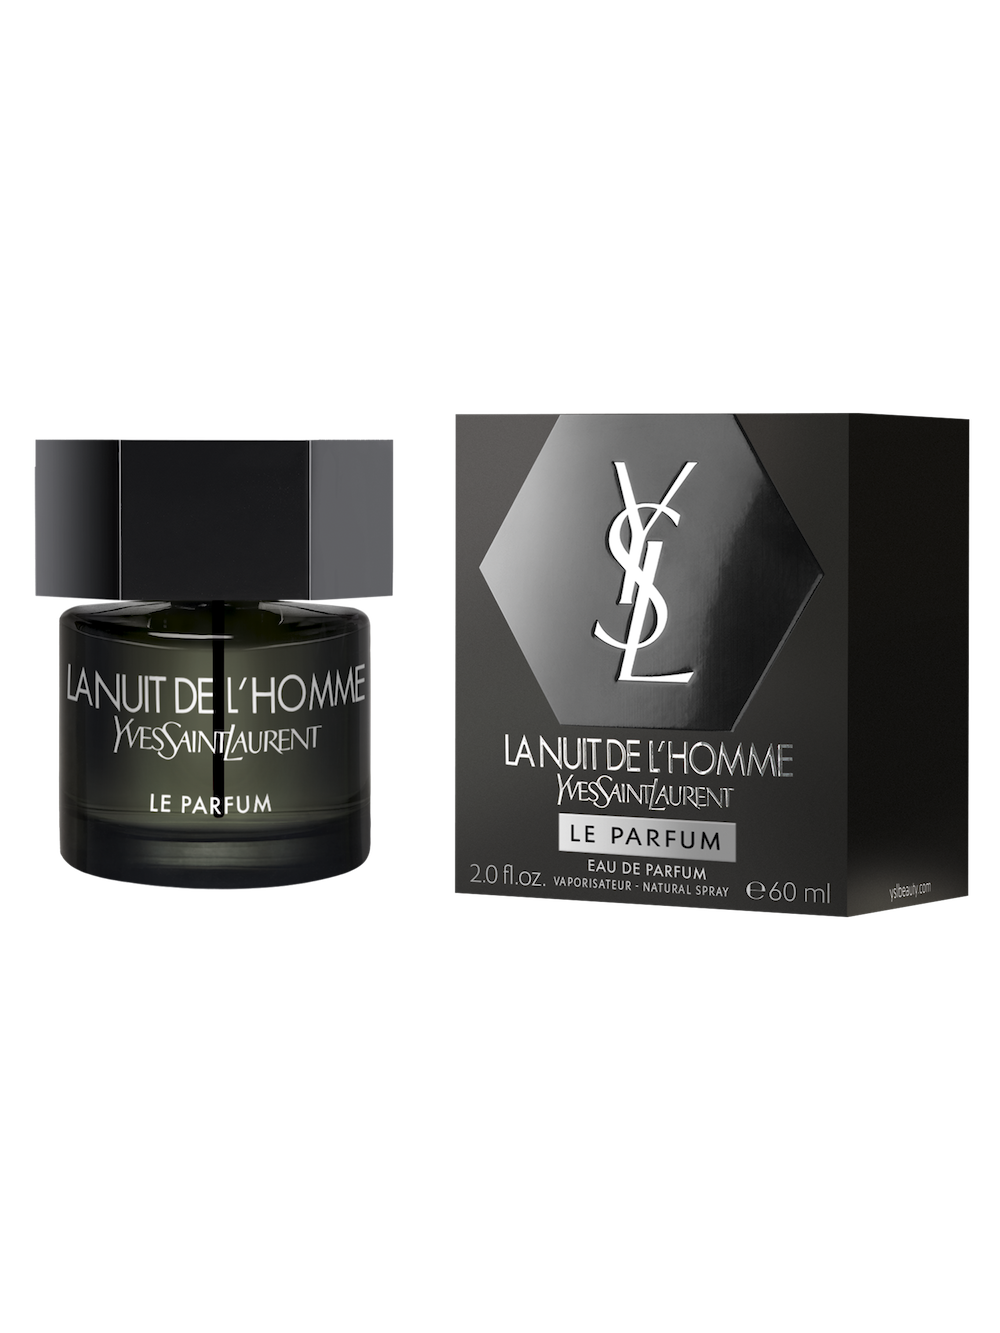 Yves Saint Laurent L'Homme Nuit Le Parfum 60ml